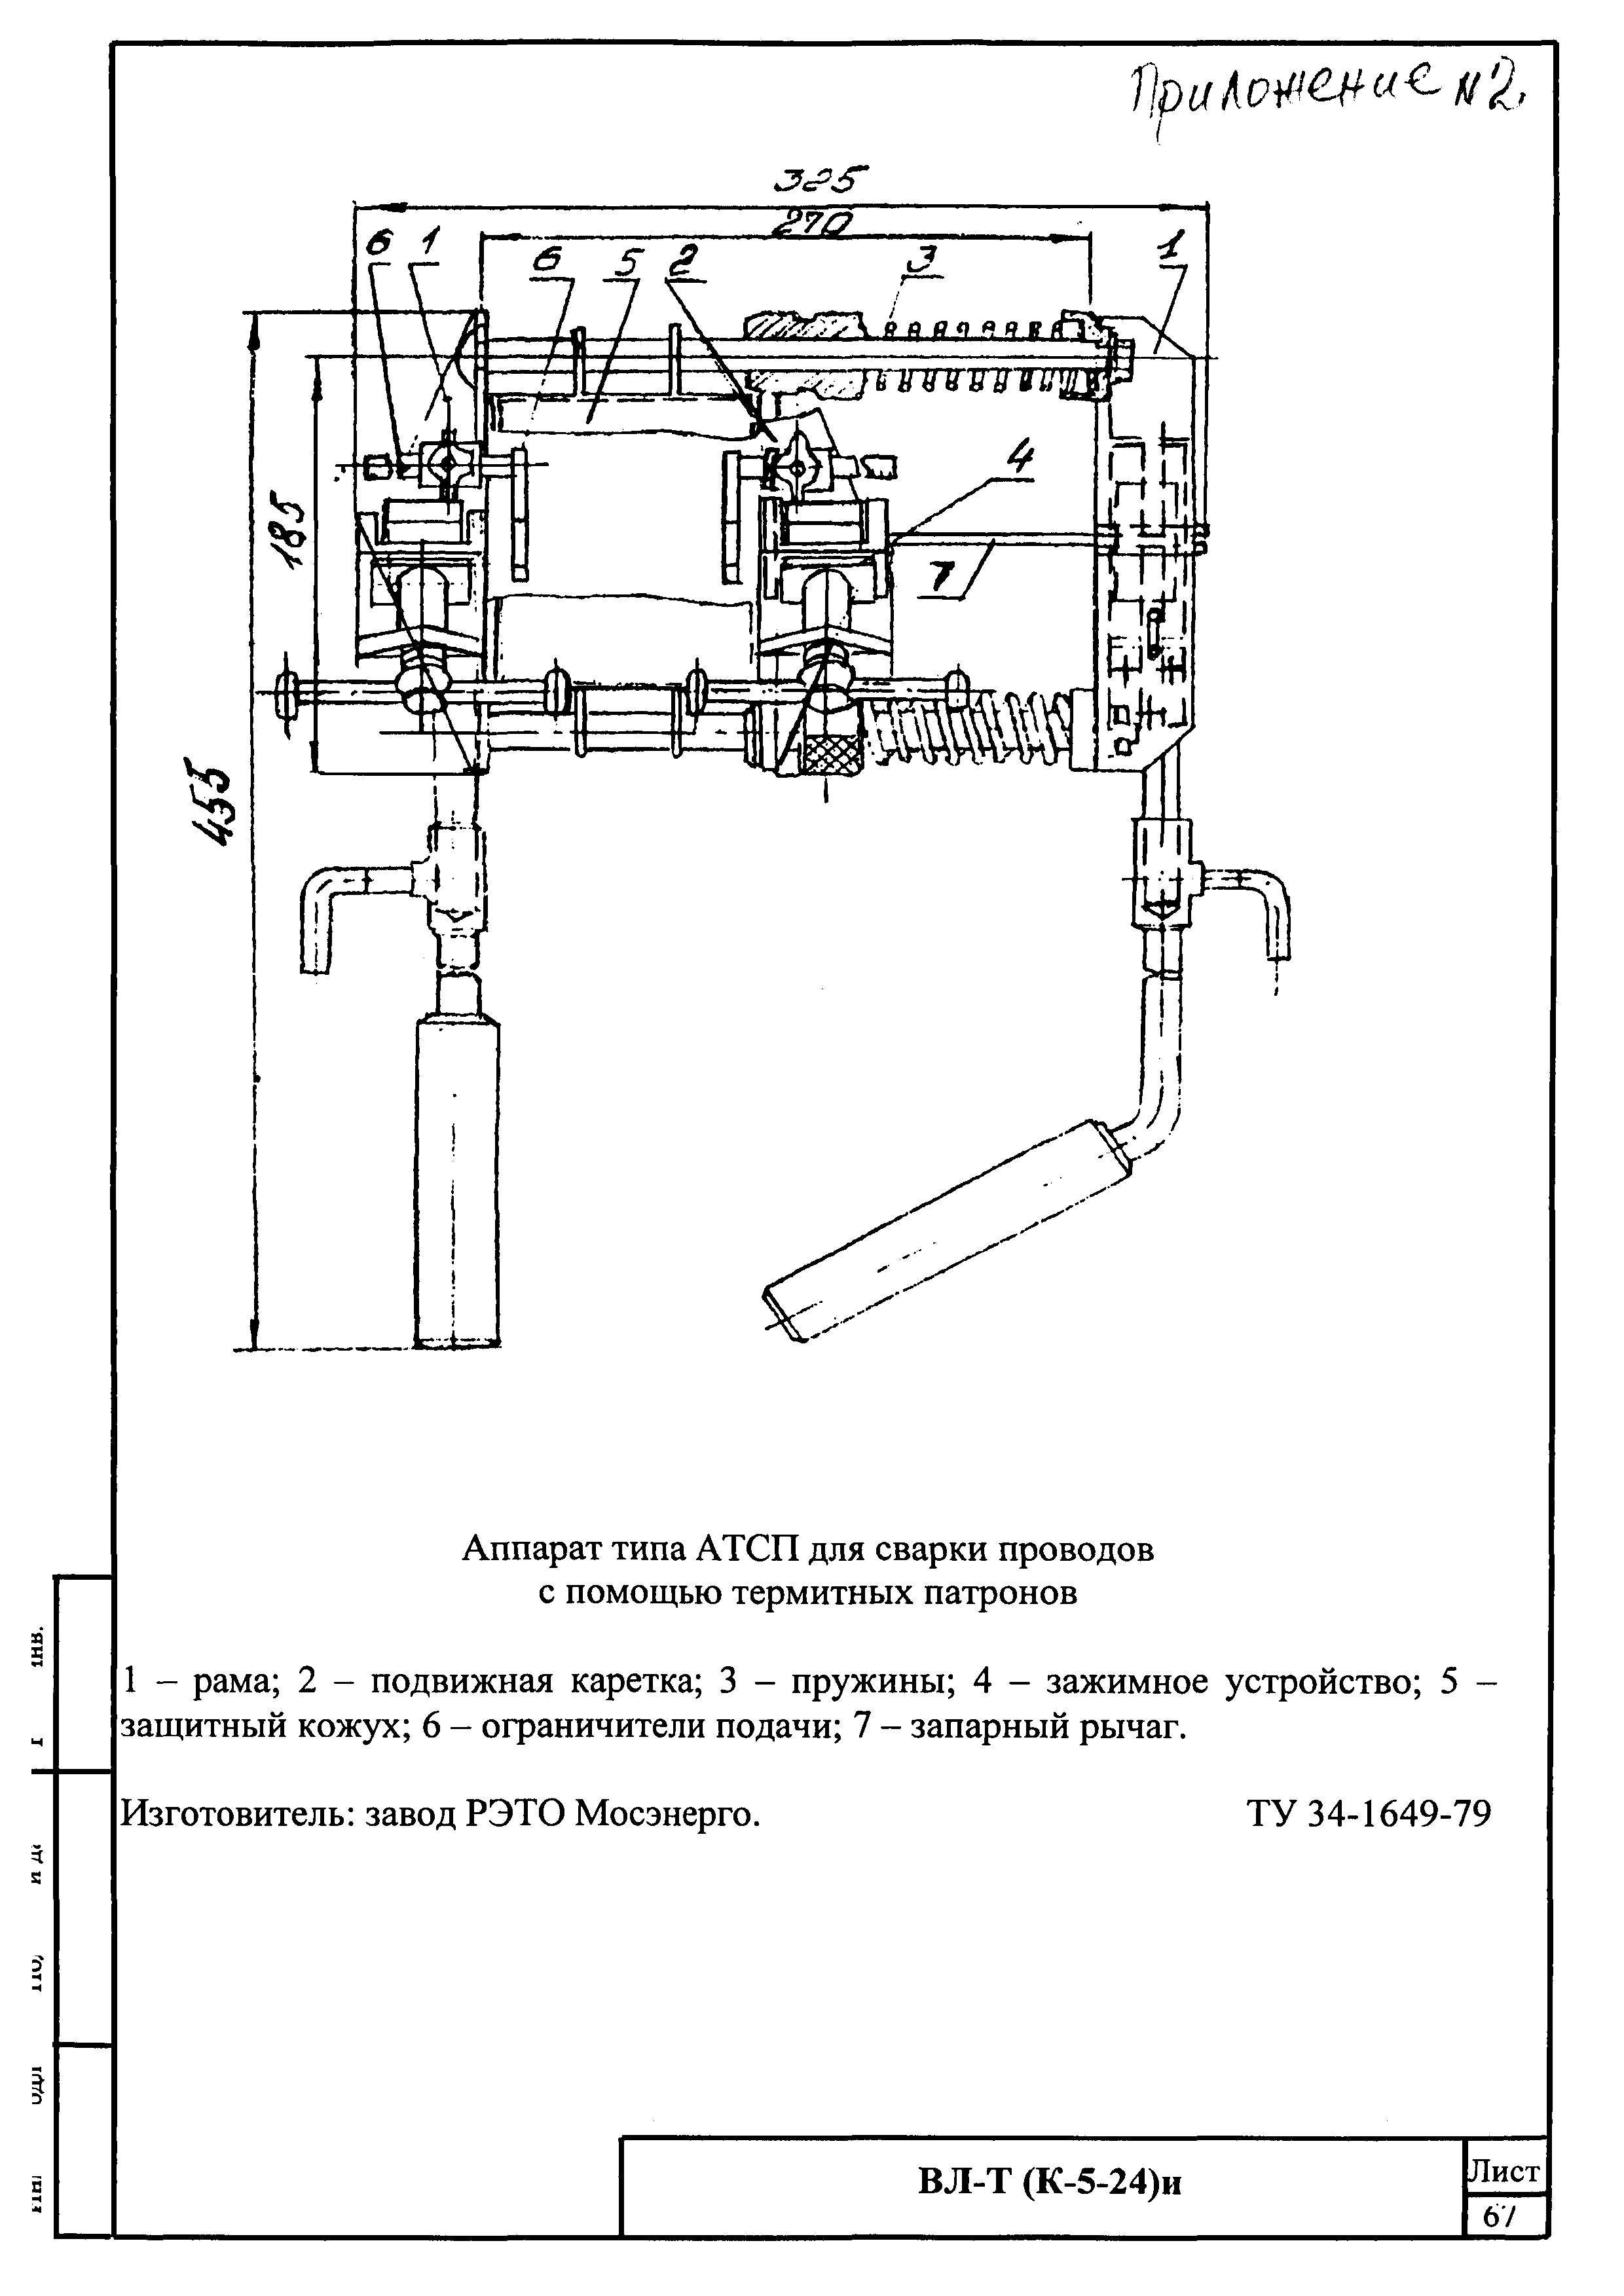 Технологическая карта К-5-24-3и